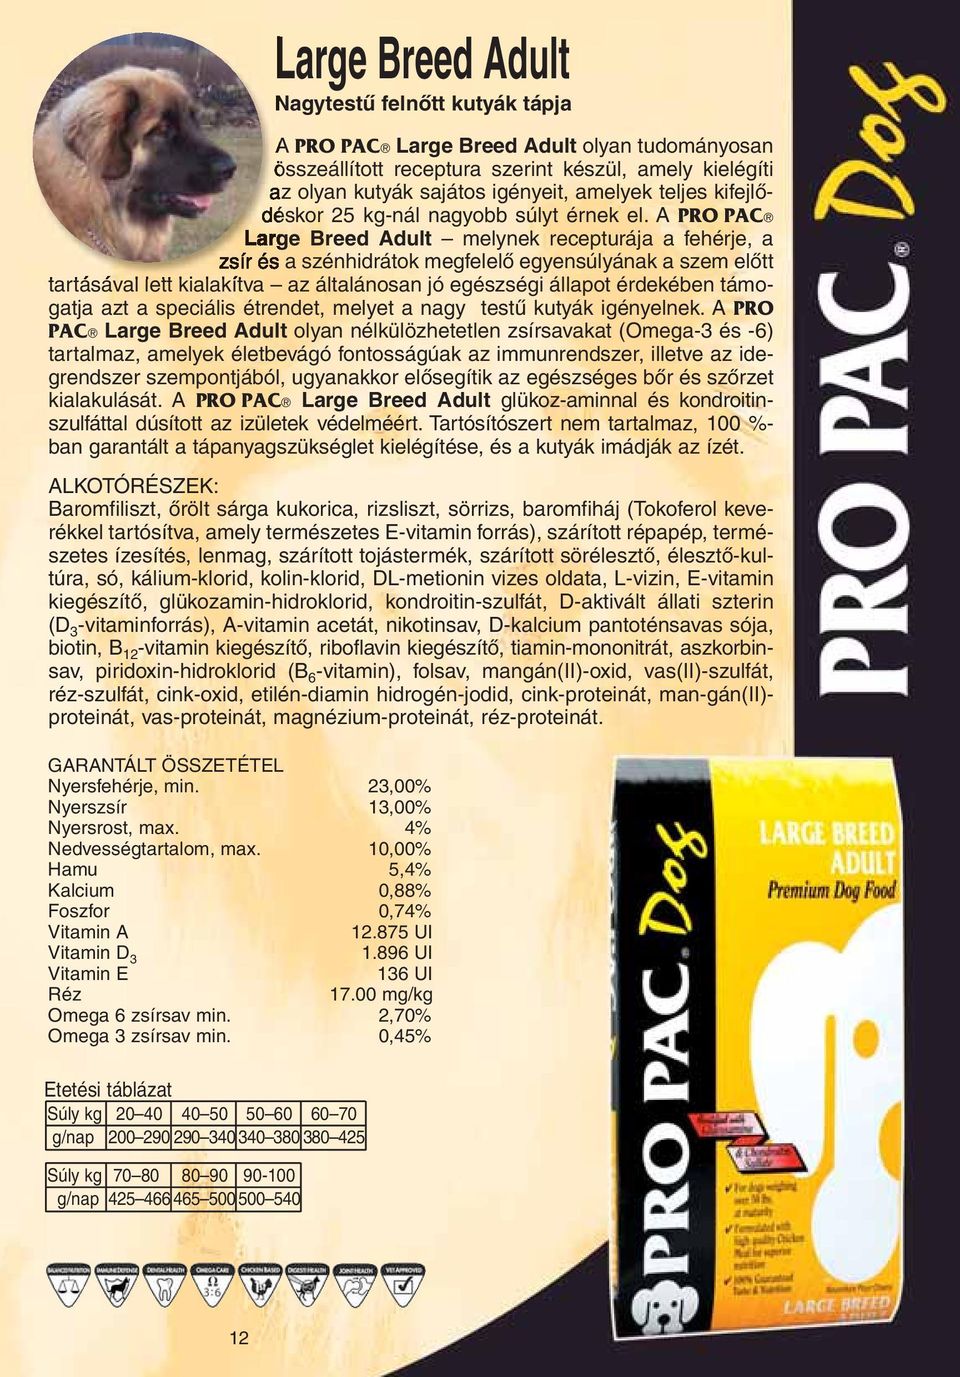 A PRO PAC Large Breed Adult melynek recepturája a fehérje, a zsír és a szénhidrátok megfelelô egyensúlyának a szem elôtt tartásával lett kialakítva az általánosan jó egészségi állapot érdekében